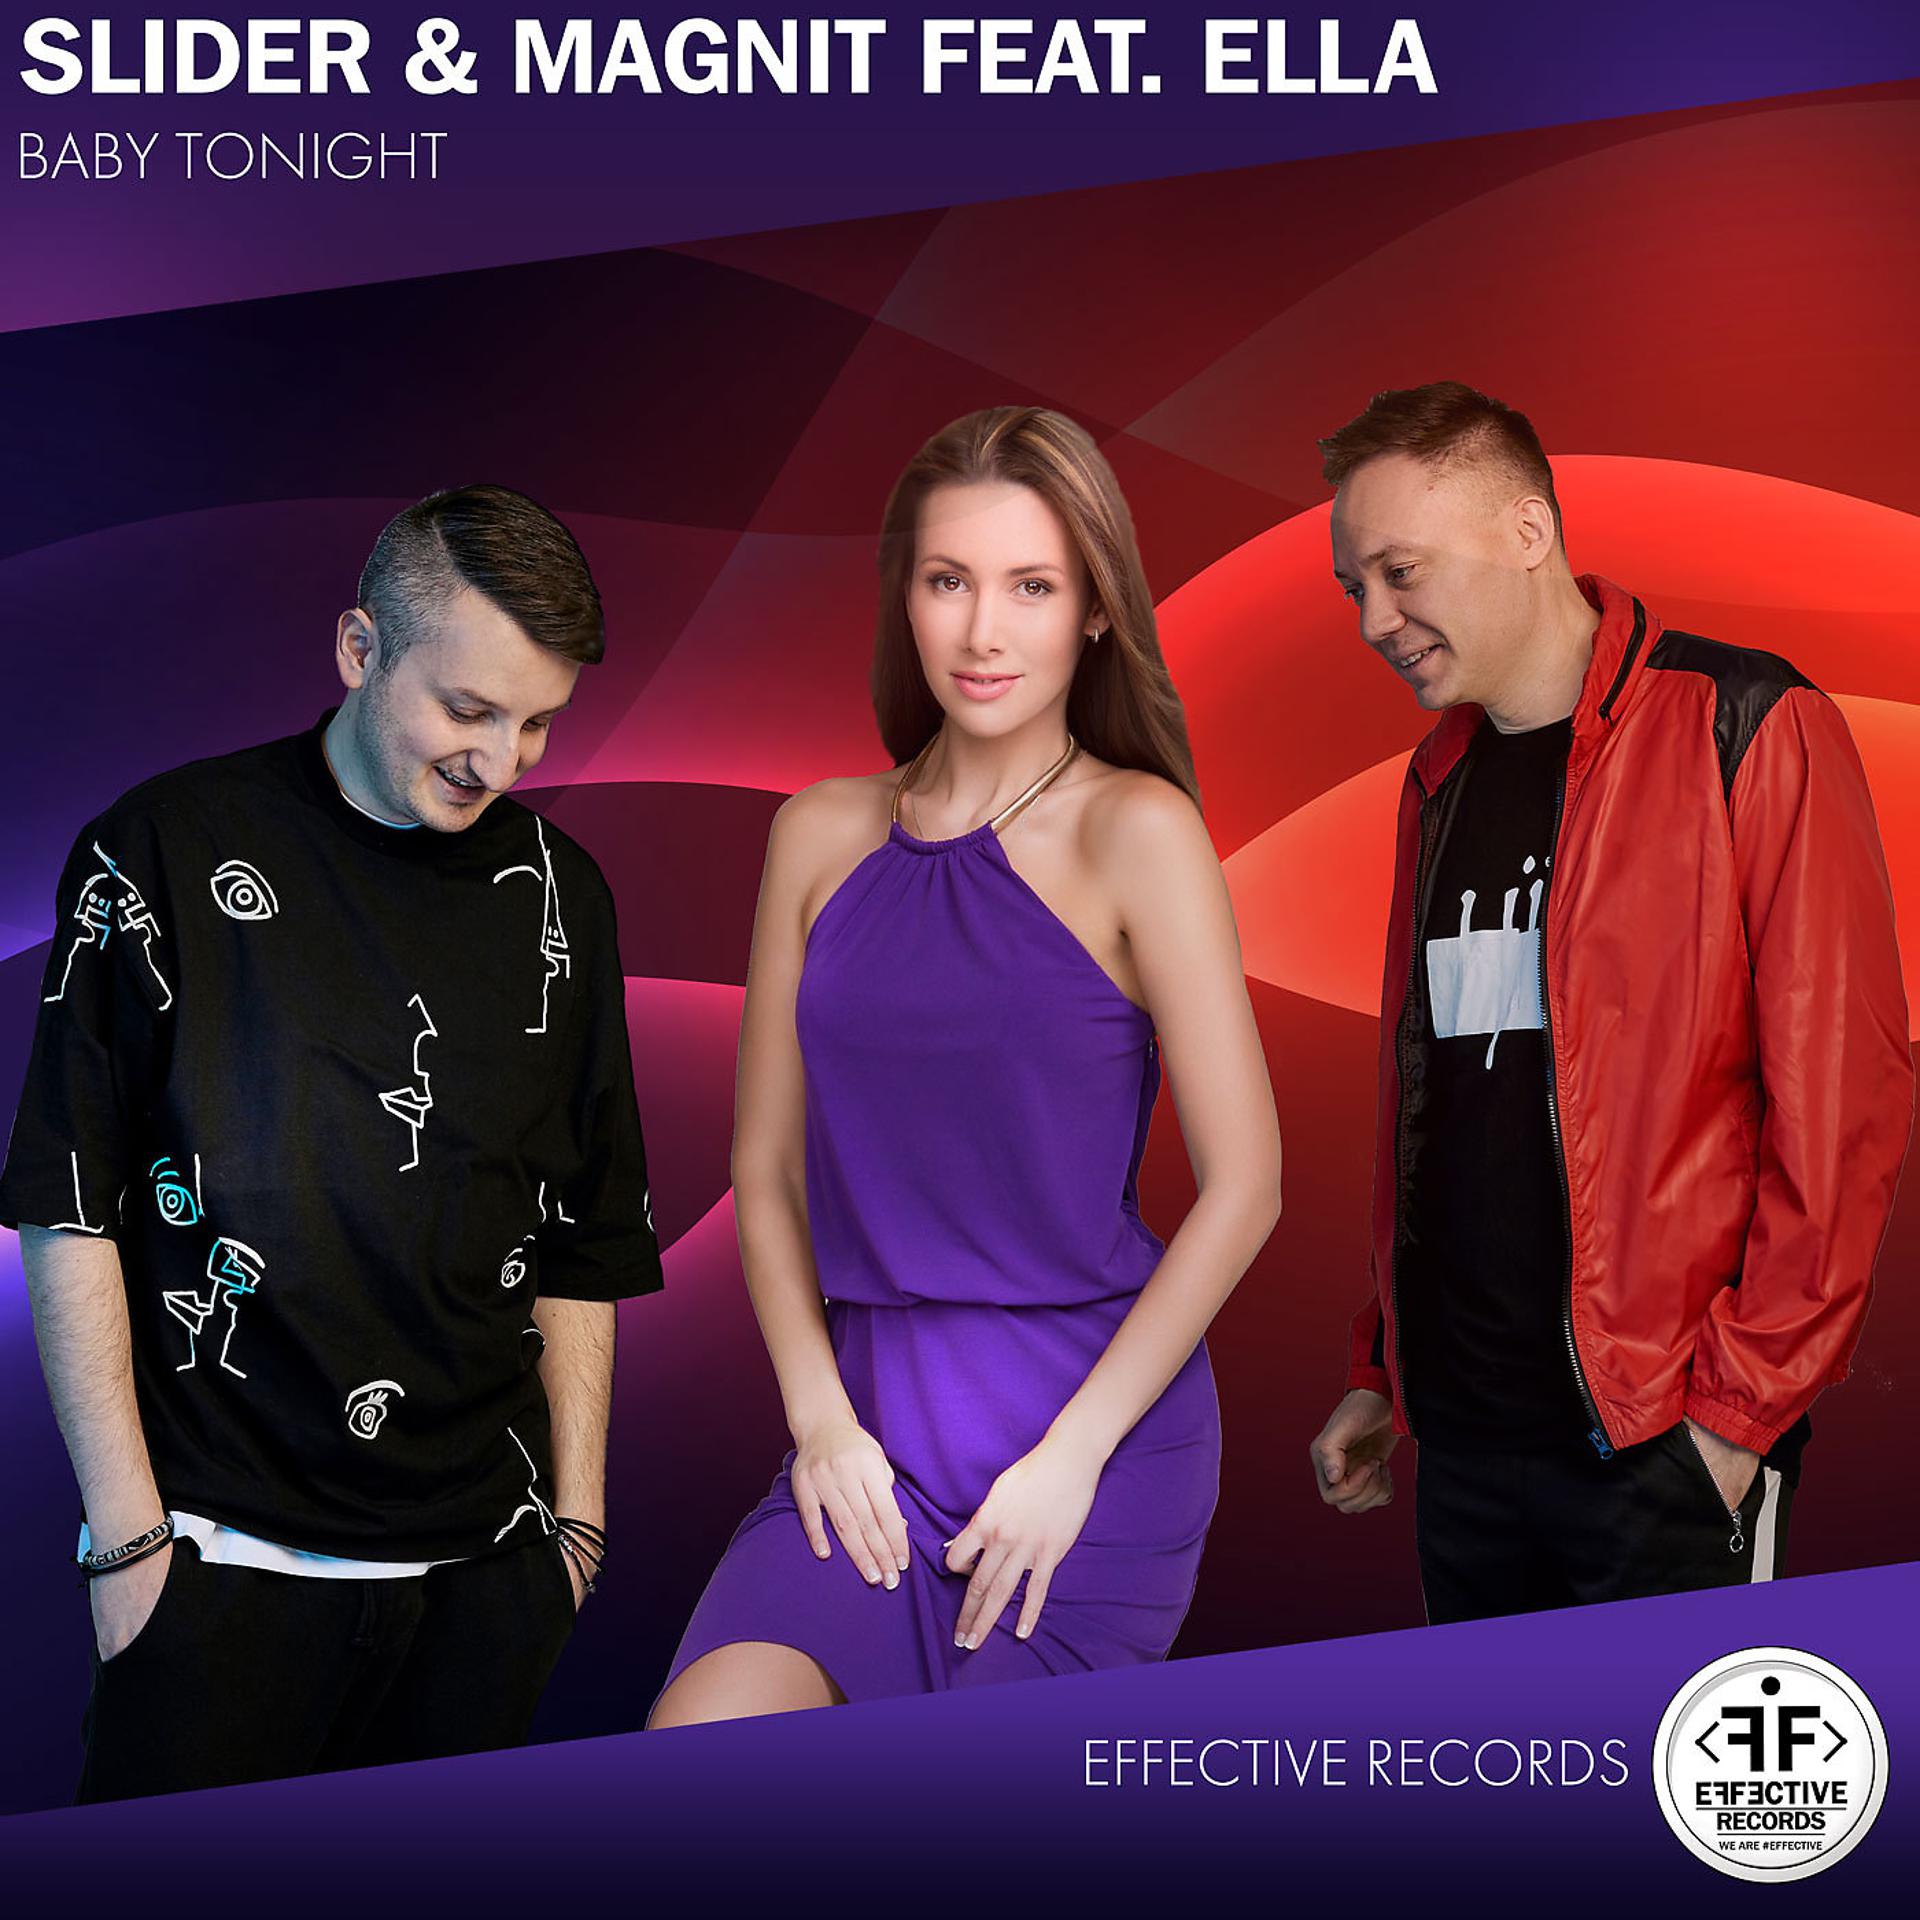 Слайдер слушать. Слайдер и магнит. Slider Magnit туда. Slider & Magnit feat. Ella. Slider Magnit фото.